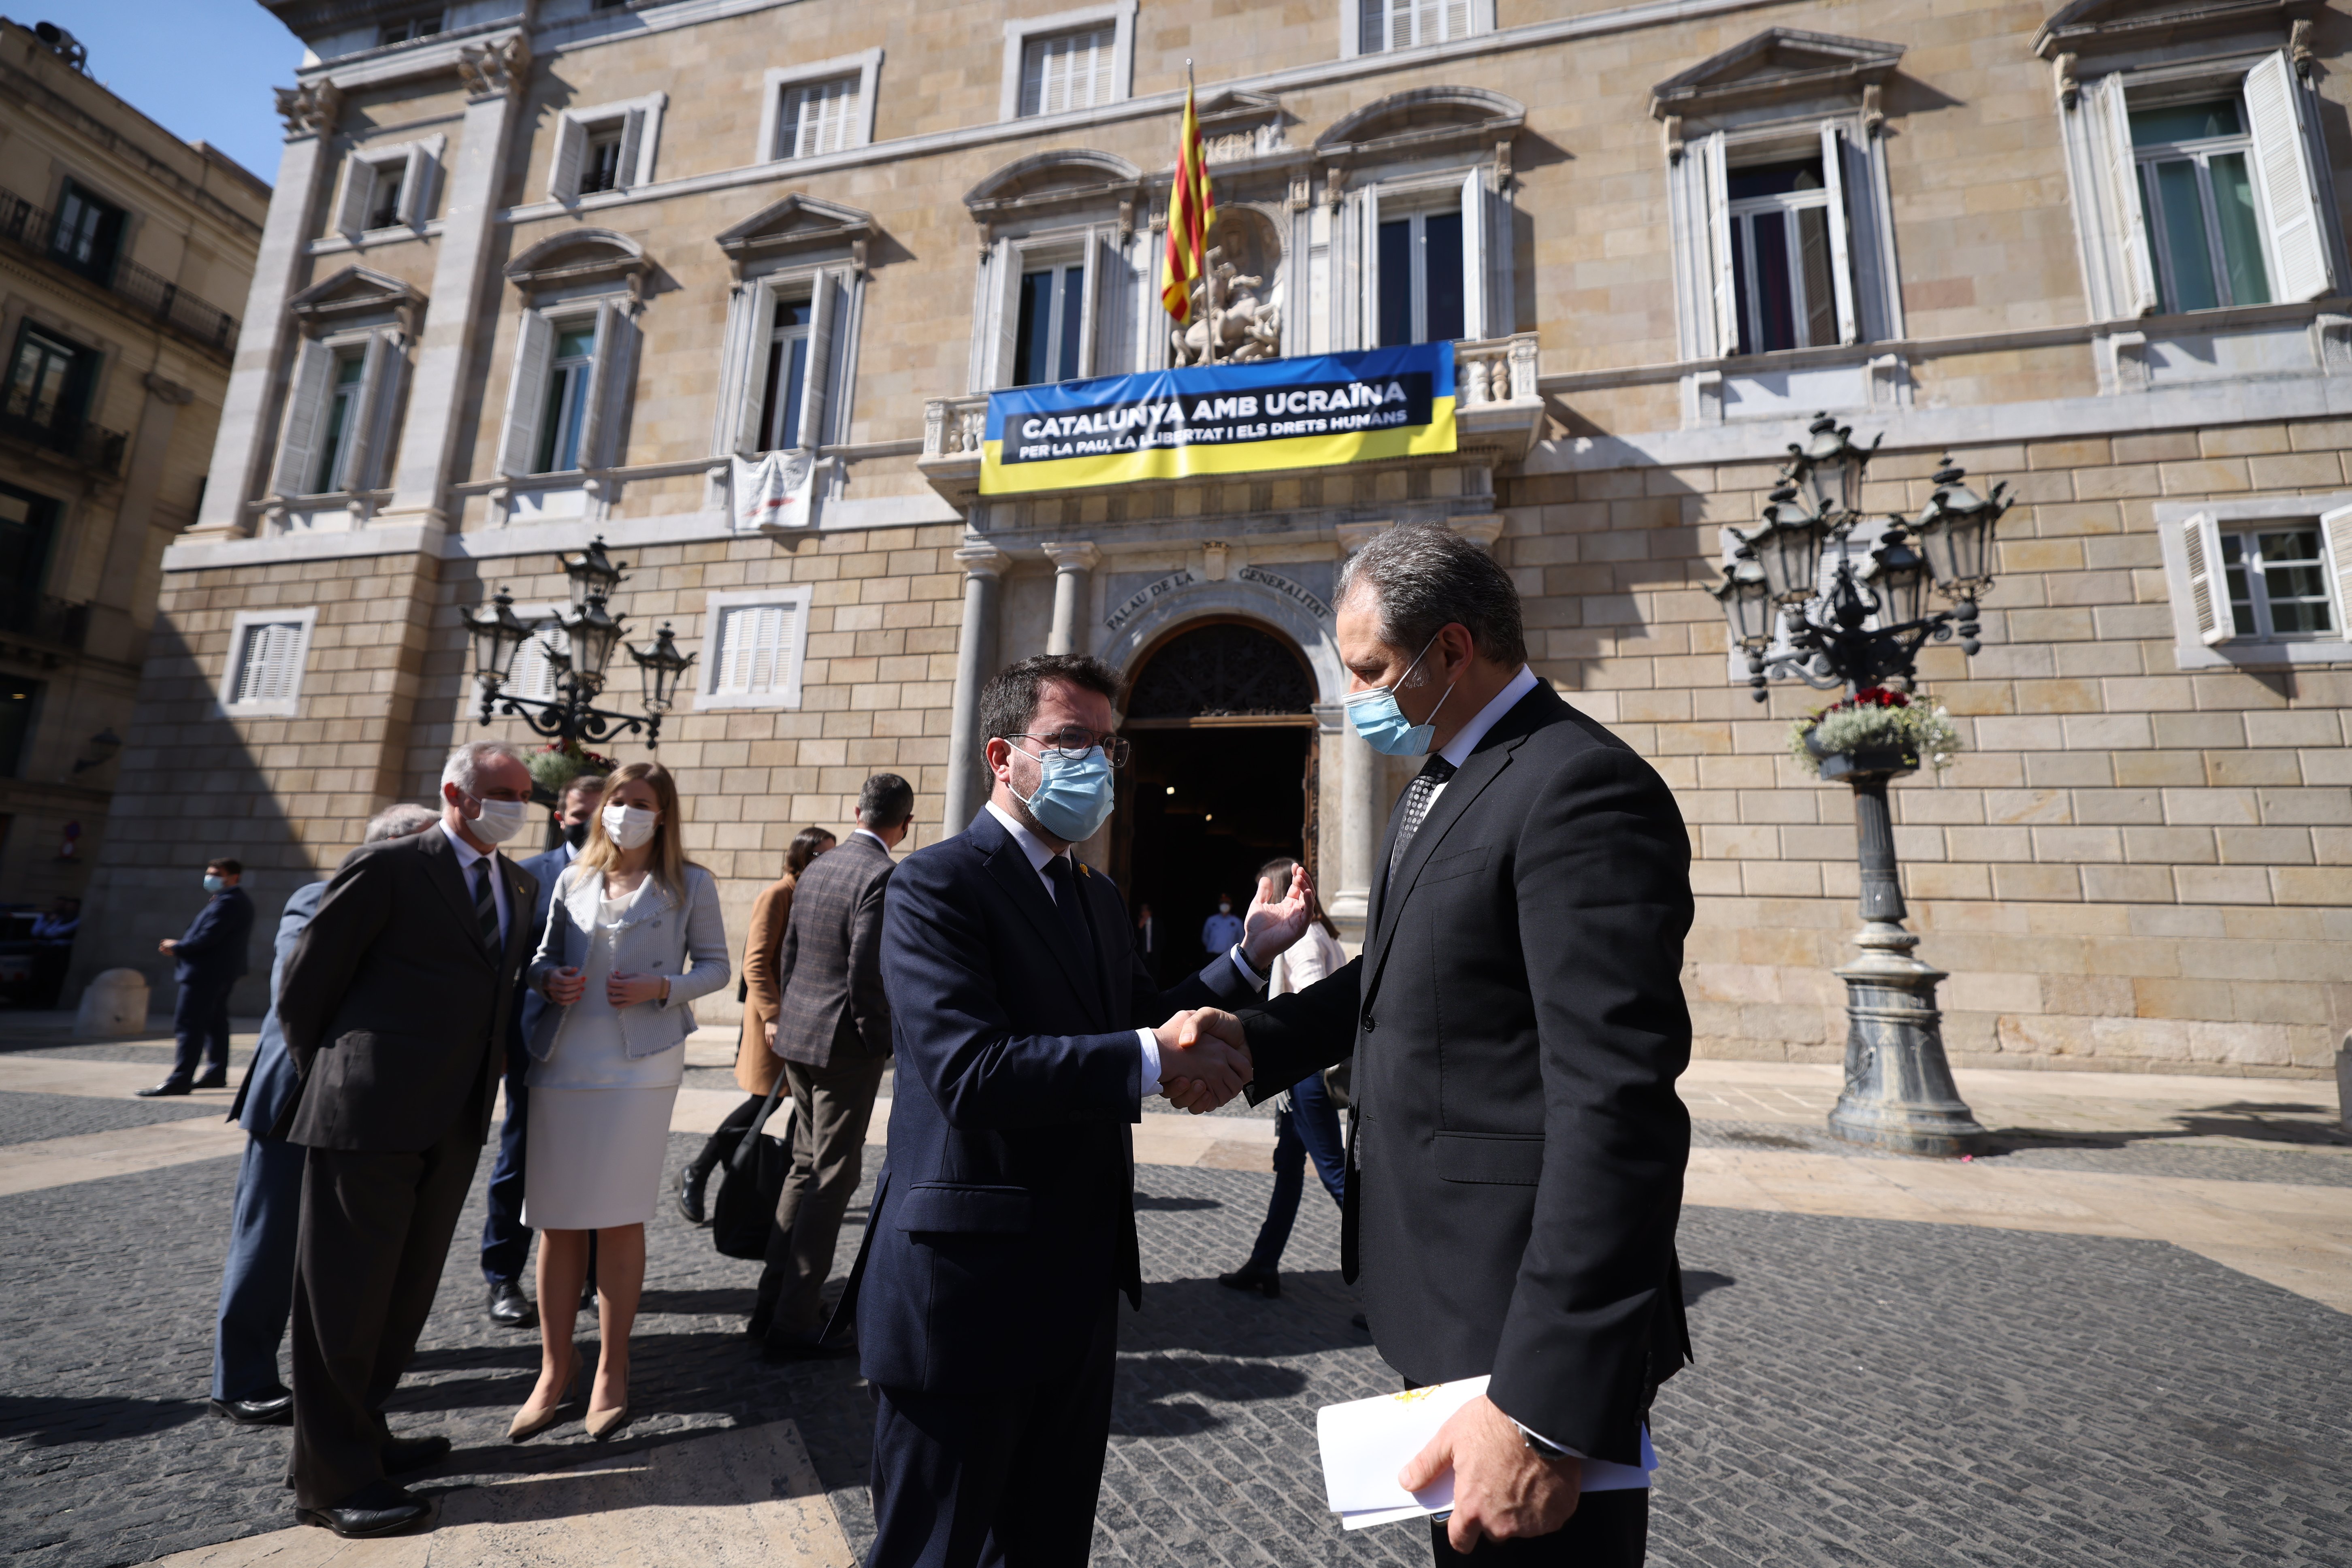 Apoyo del Govern a Ucrania: "Catalunya volverà a mostrar que es tierra de acogida"